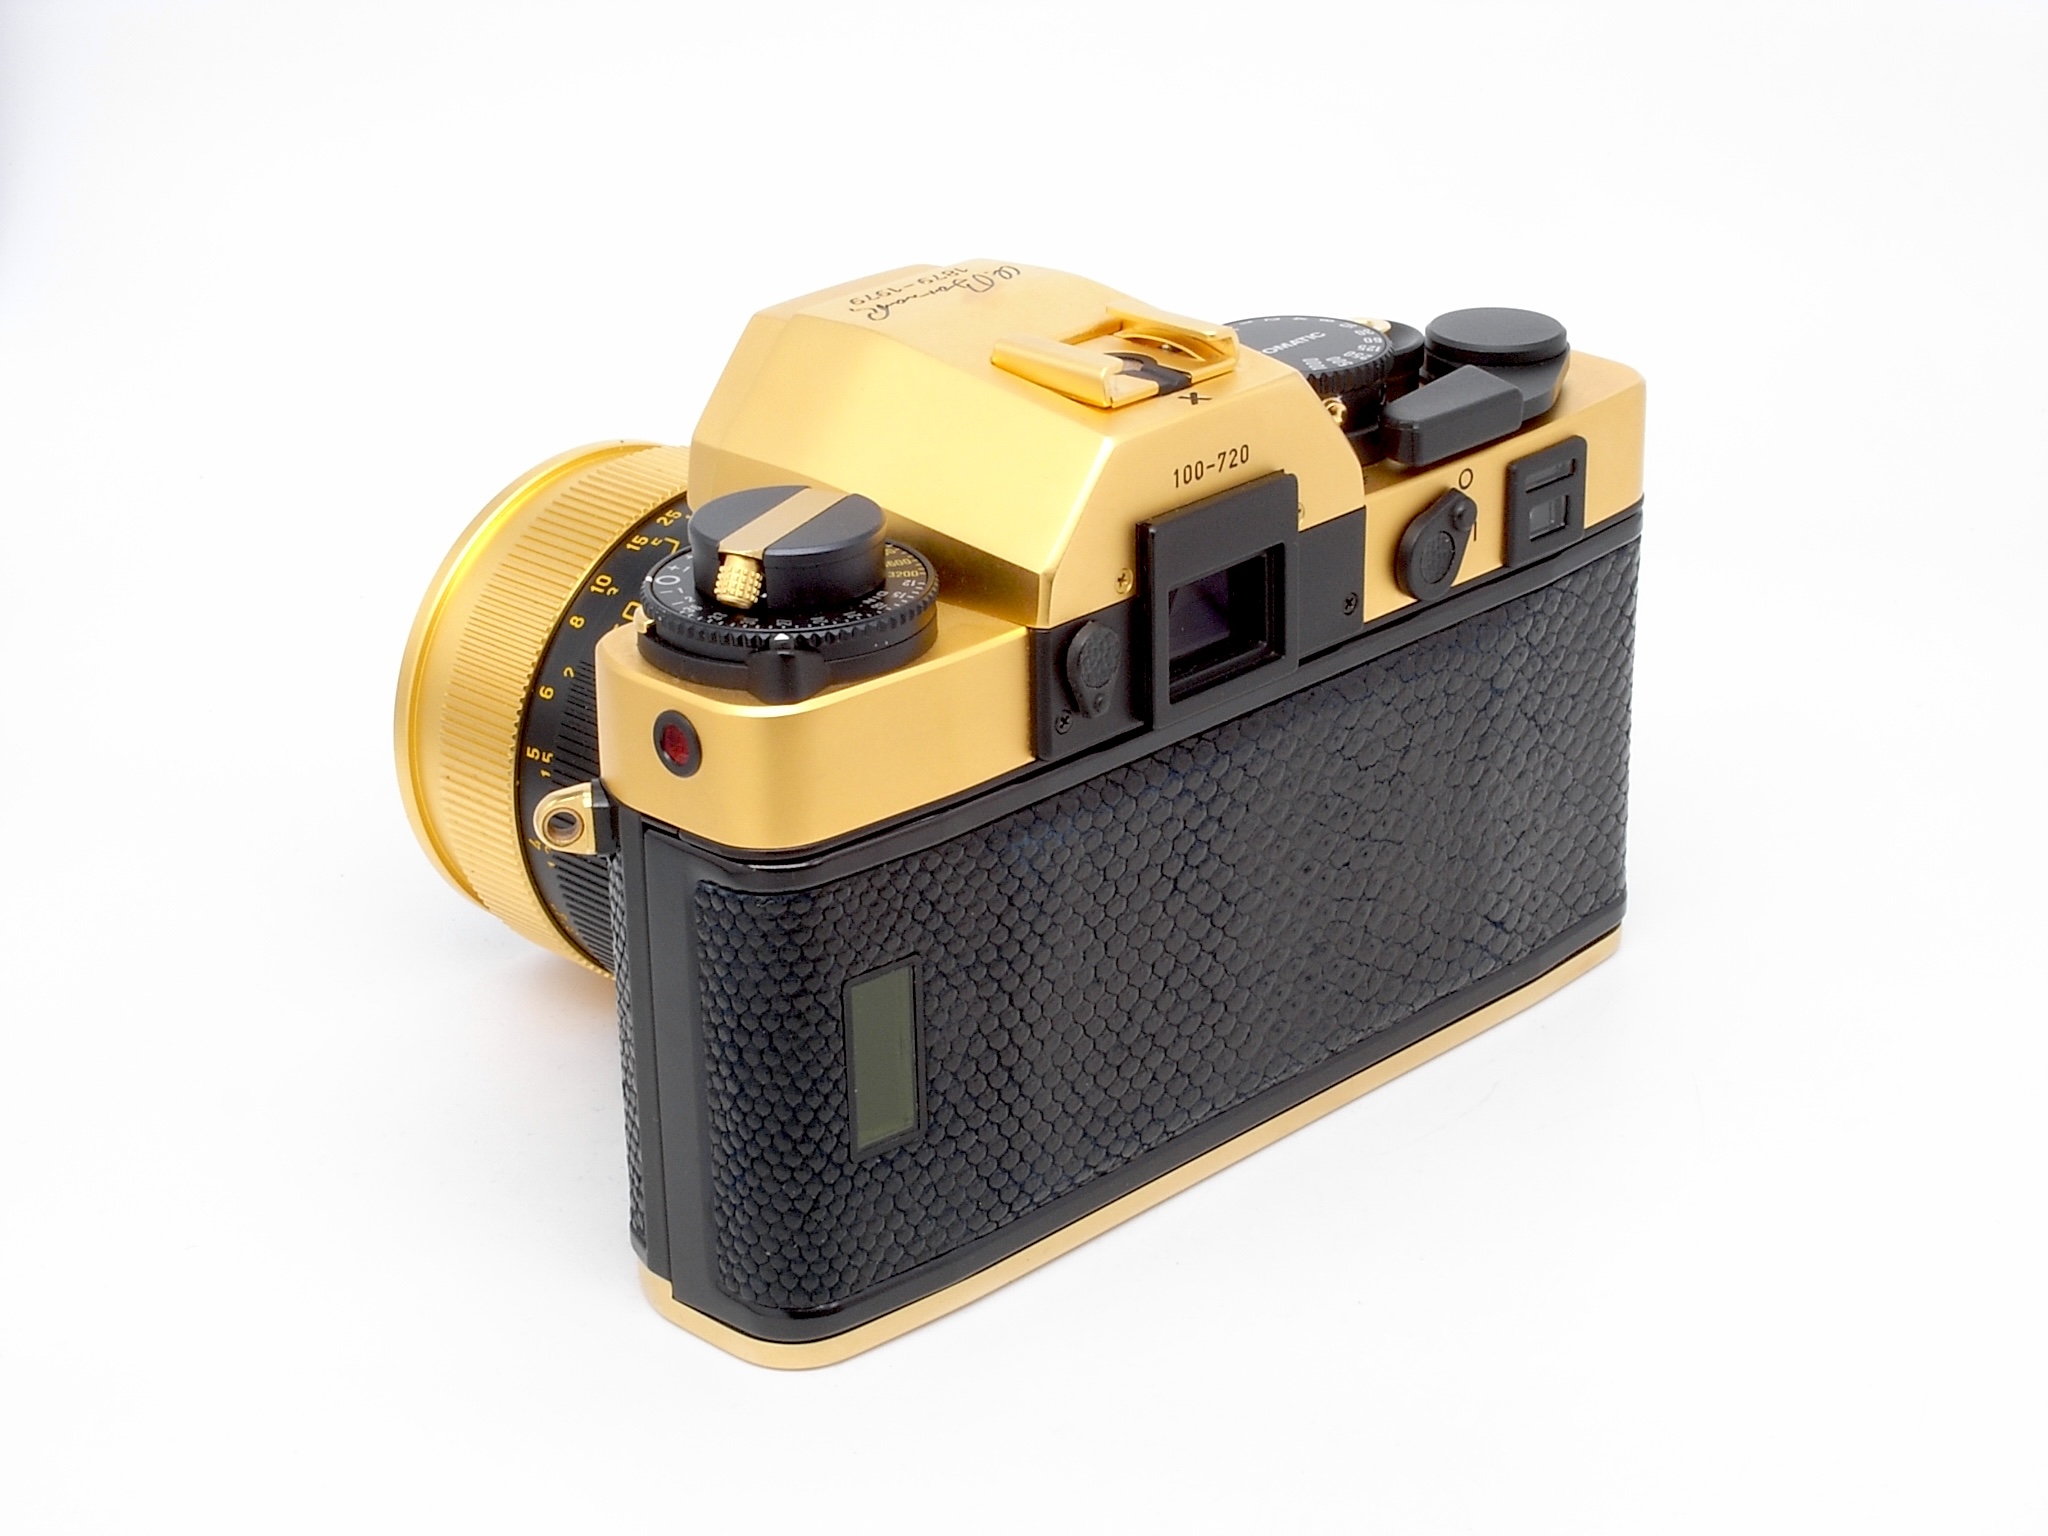 Leica R3 Gold